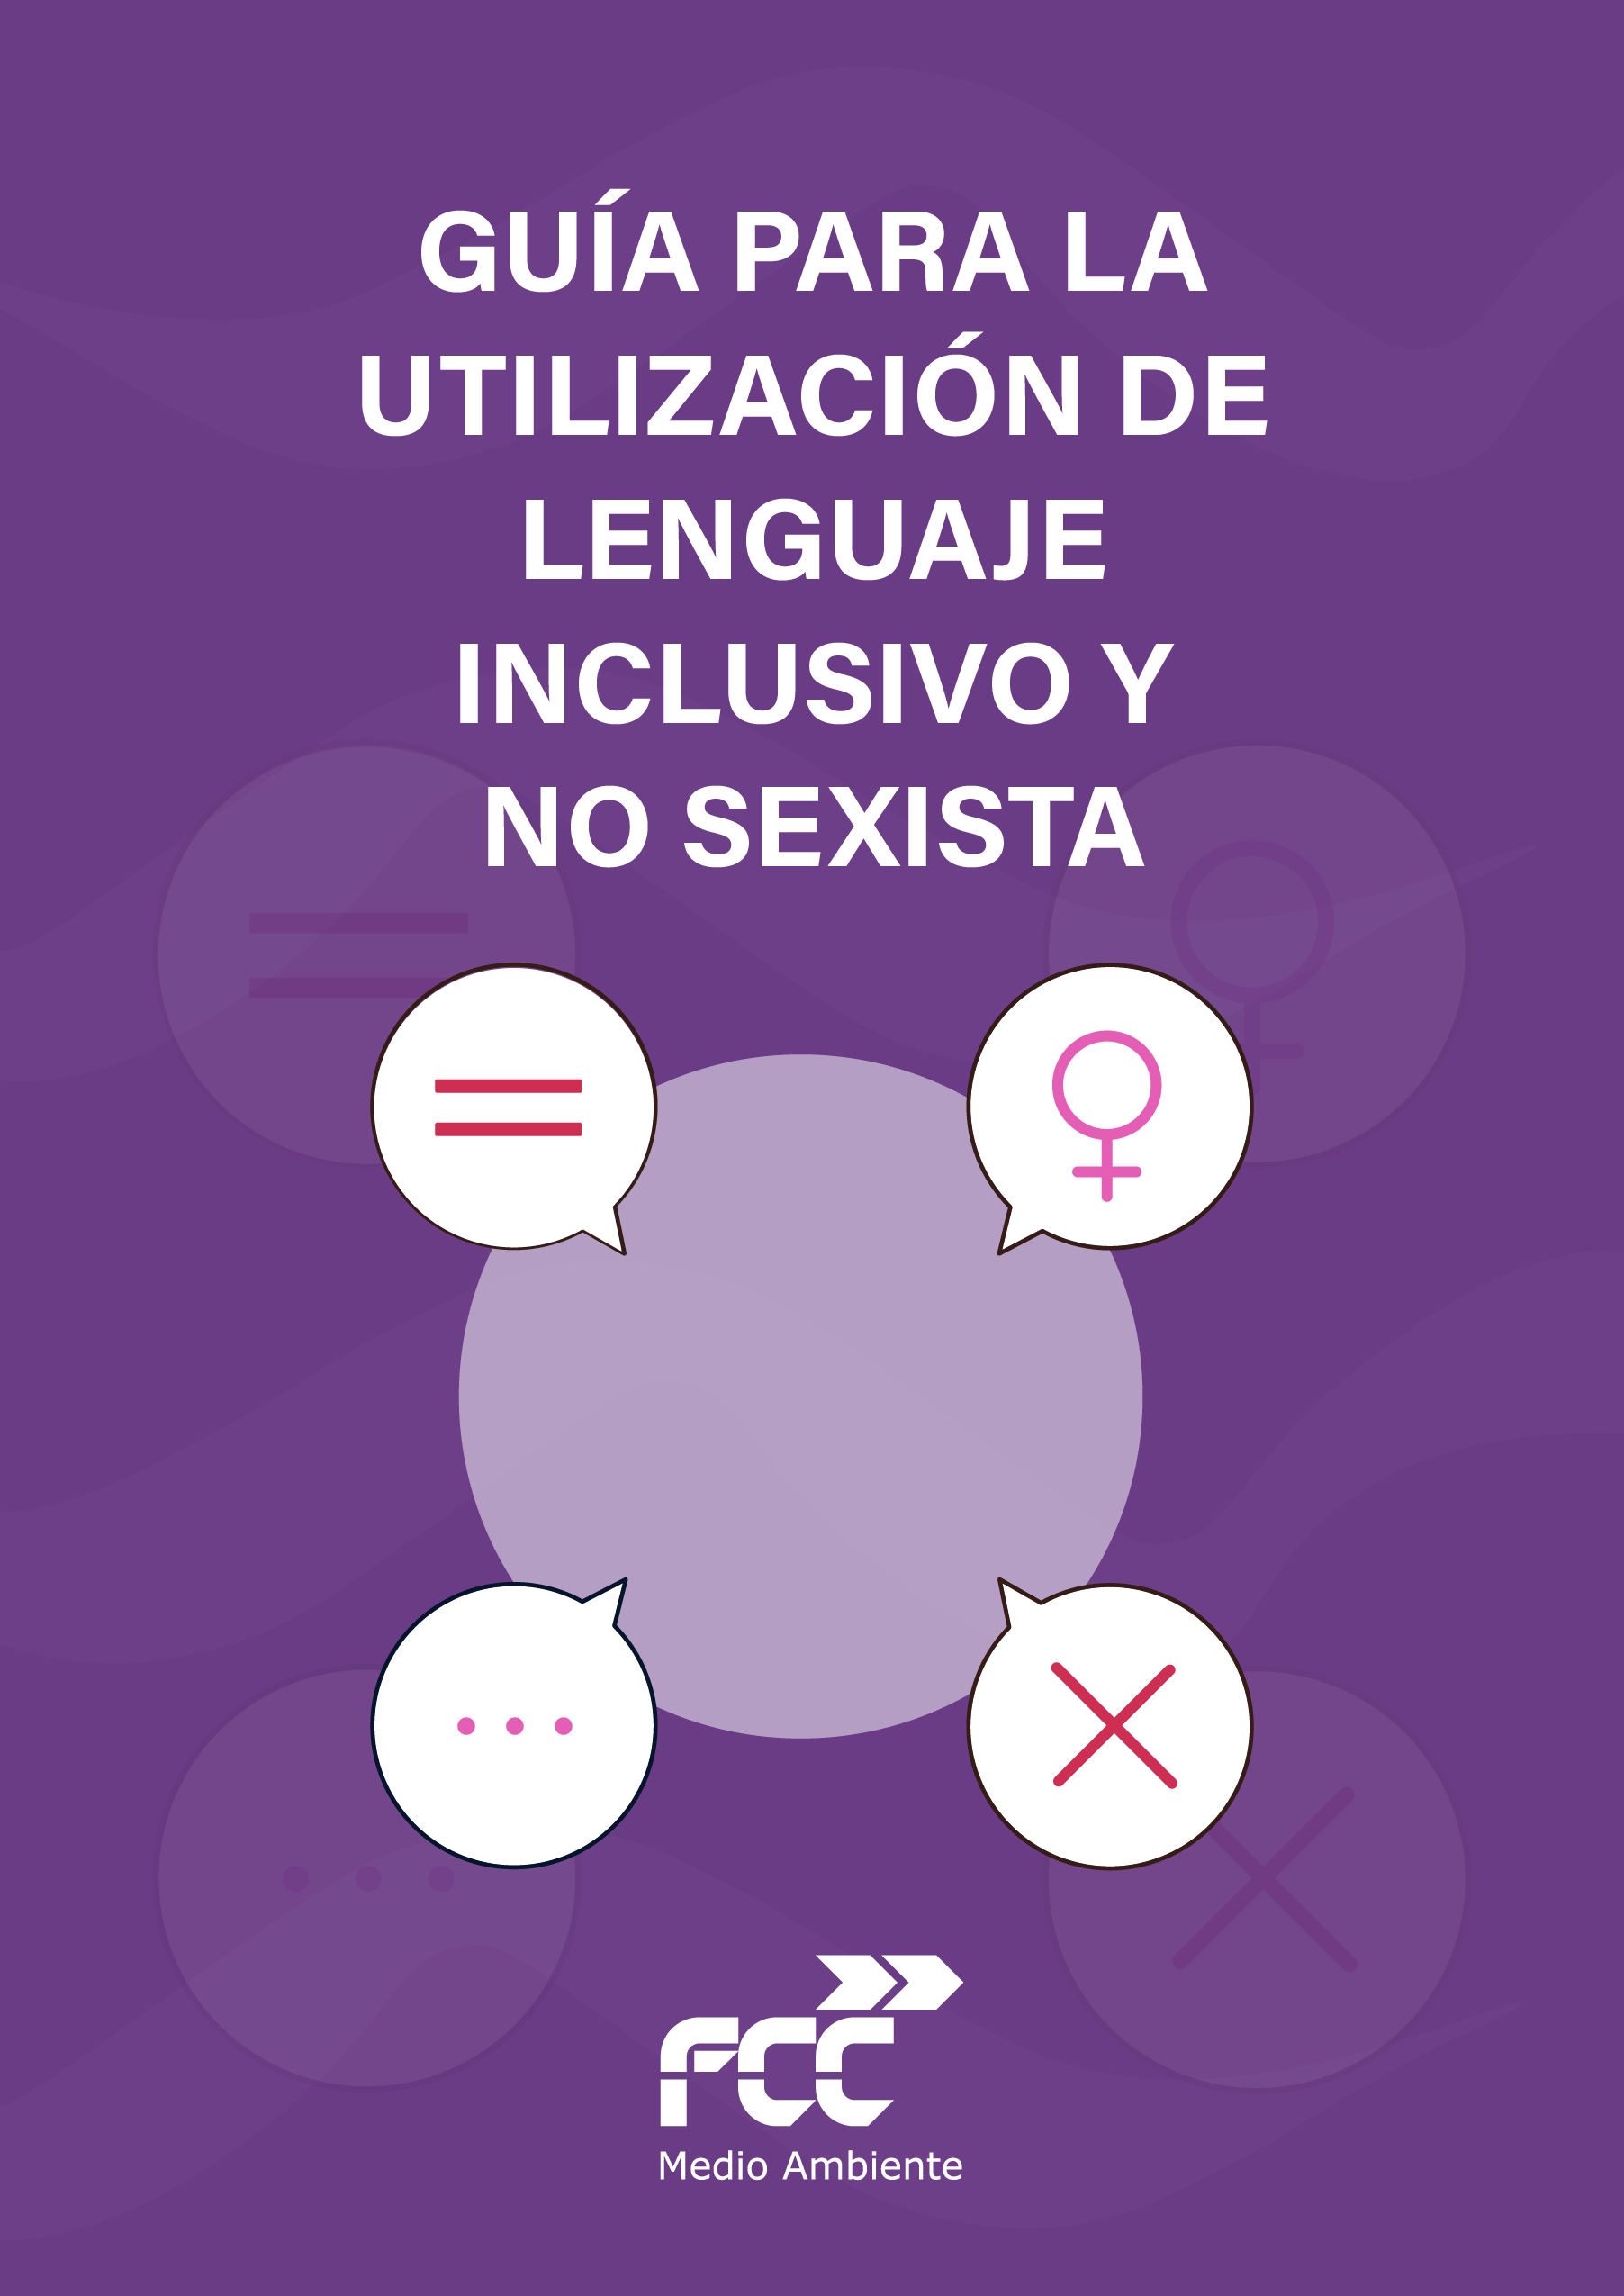 Guía para la Utilización de Lenguaje Inclusivo y No Sexista